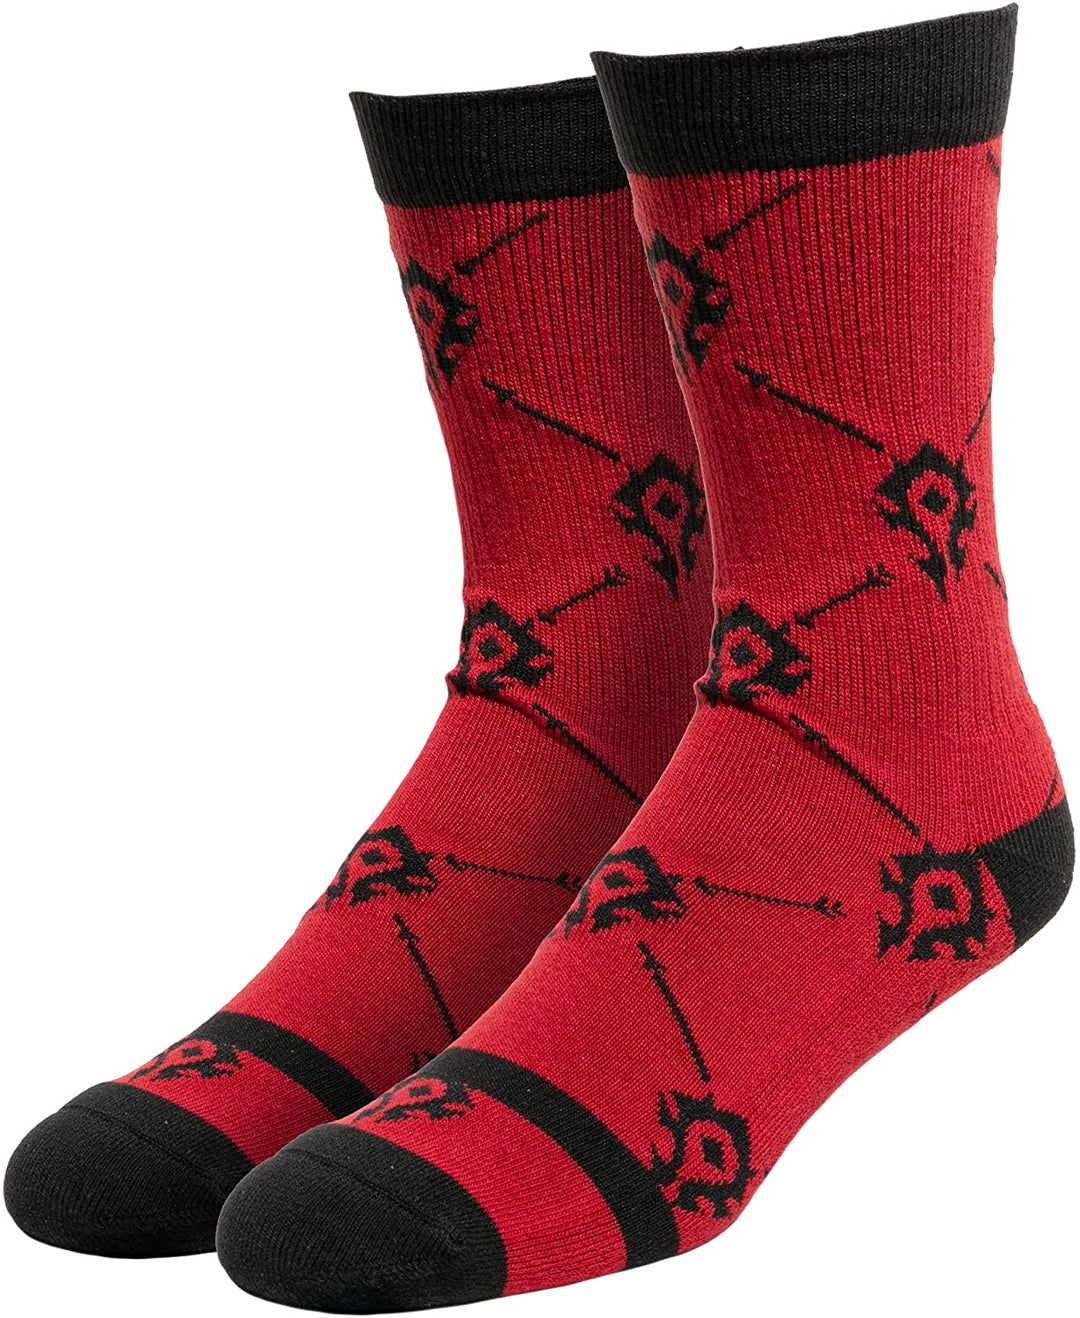 JINX World of Warcraft Horde Unisex Socken rot-schwarz, 77 % Polyester, 12 % Baumwolle